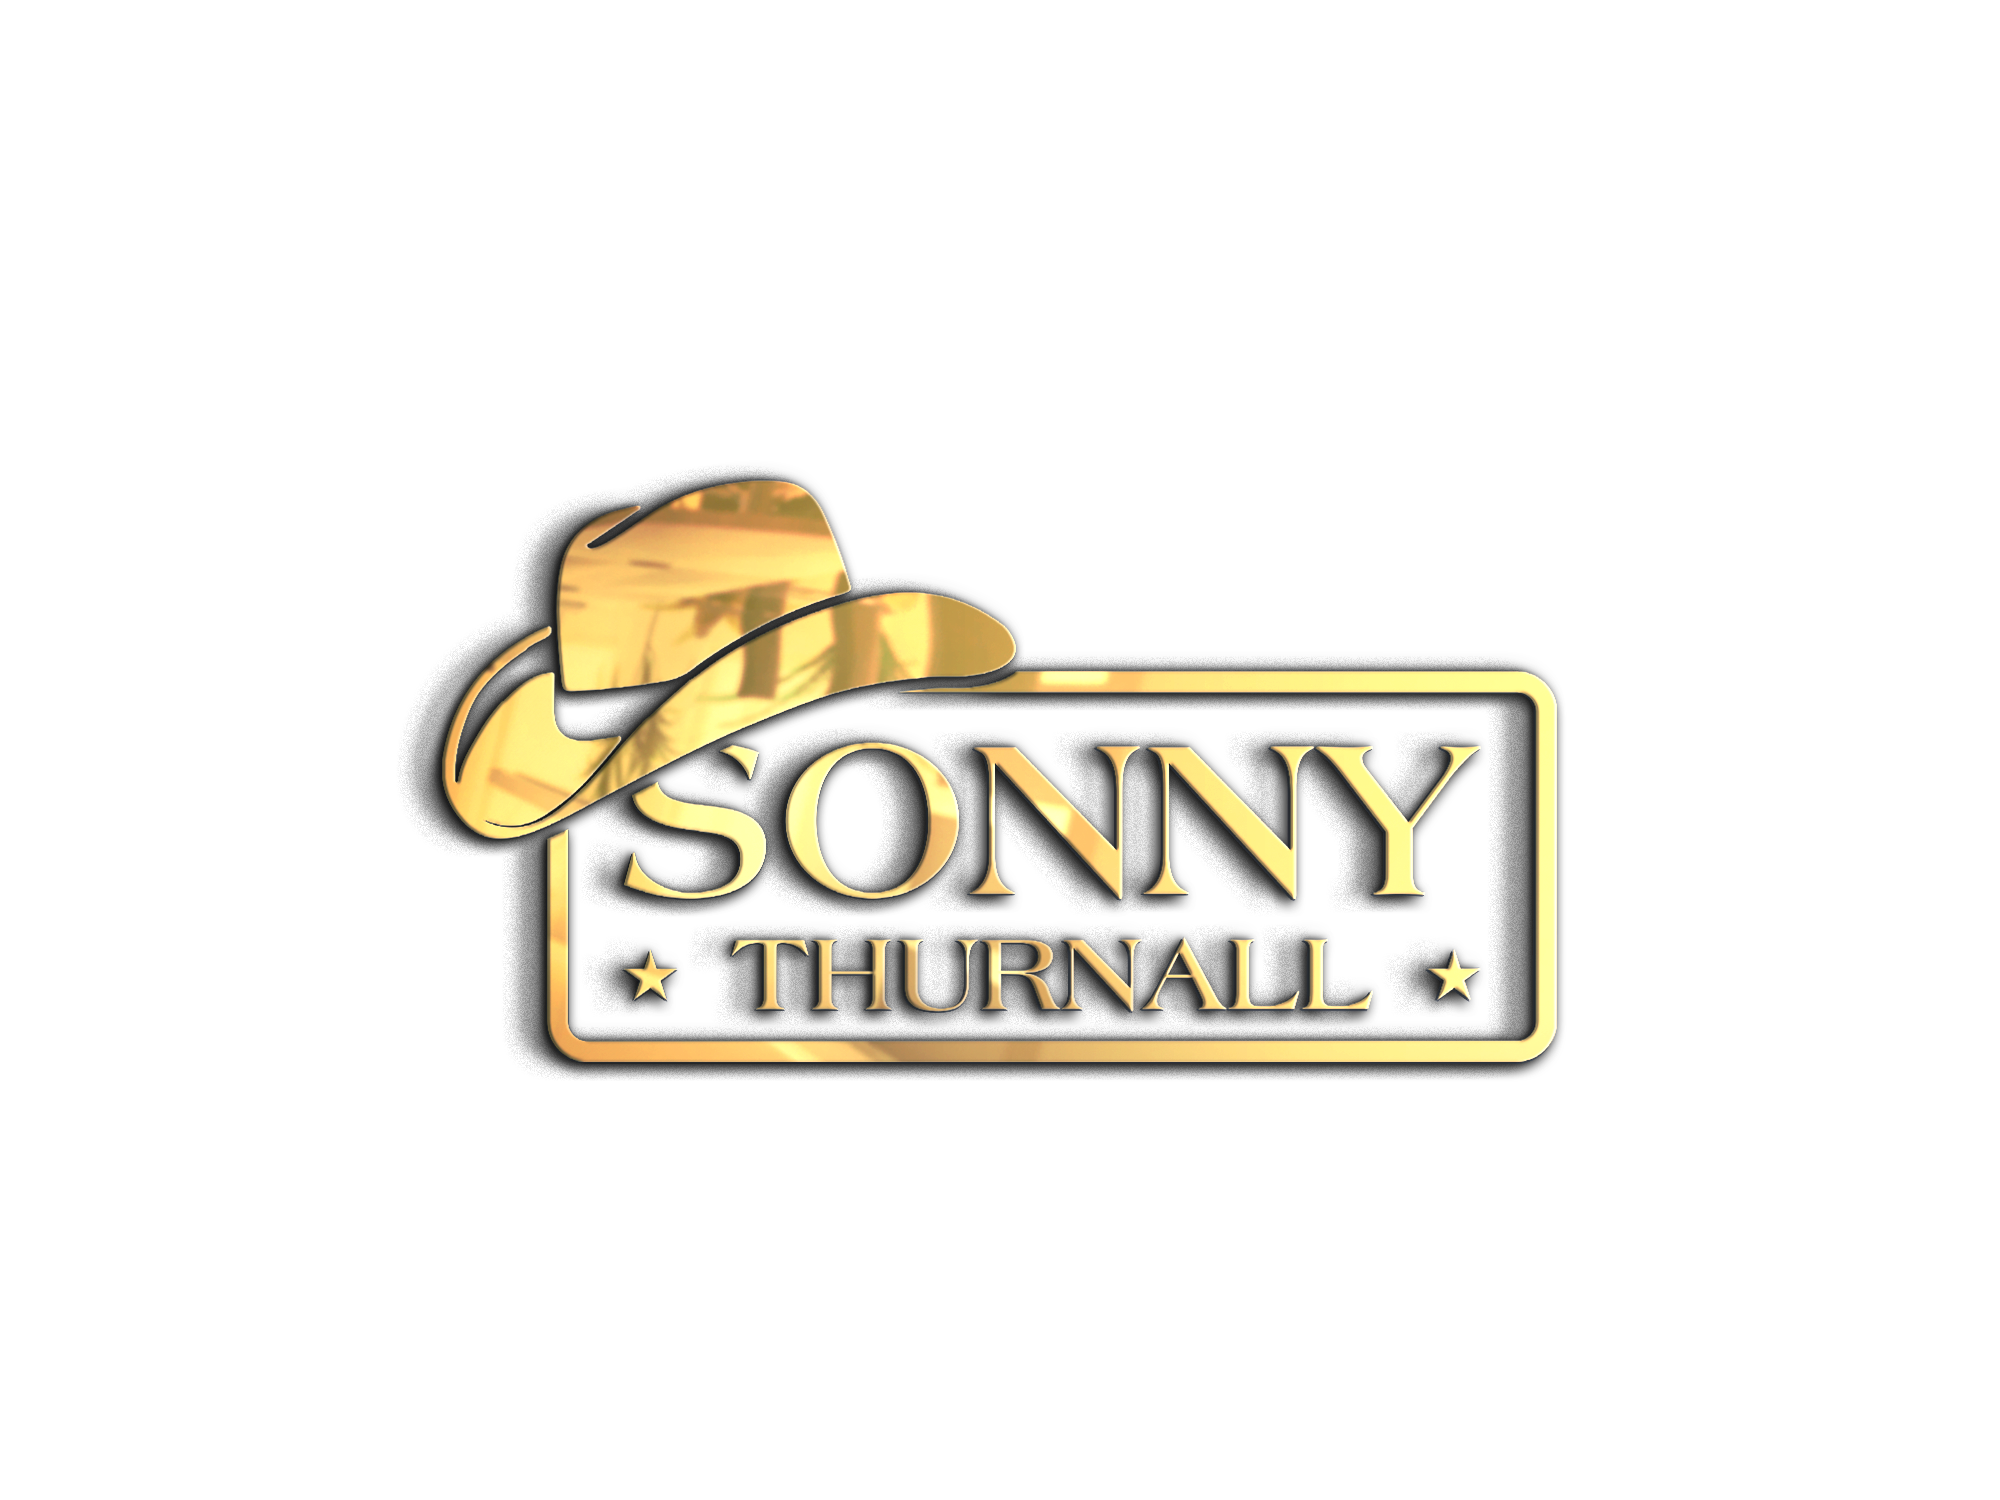 SONNY THURNALL